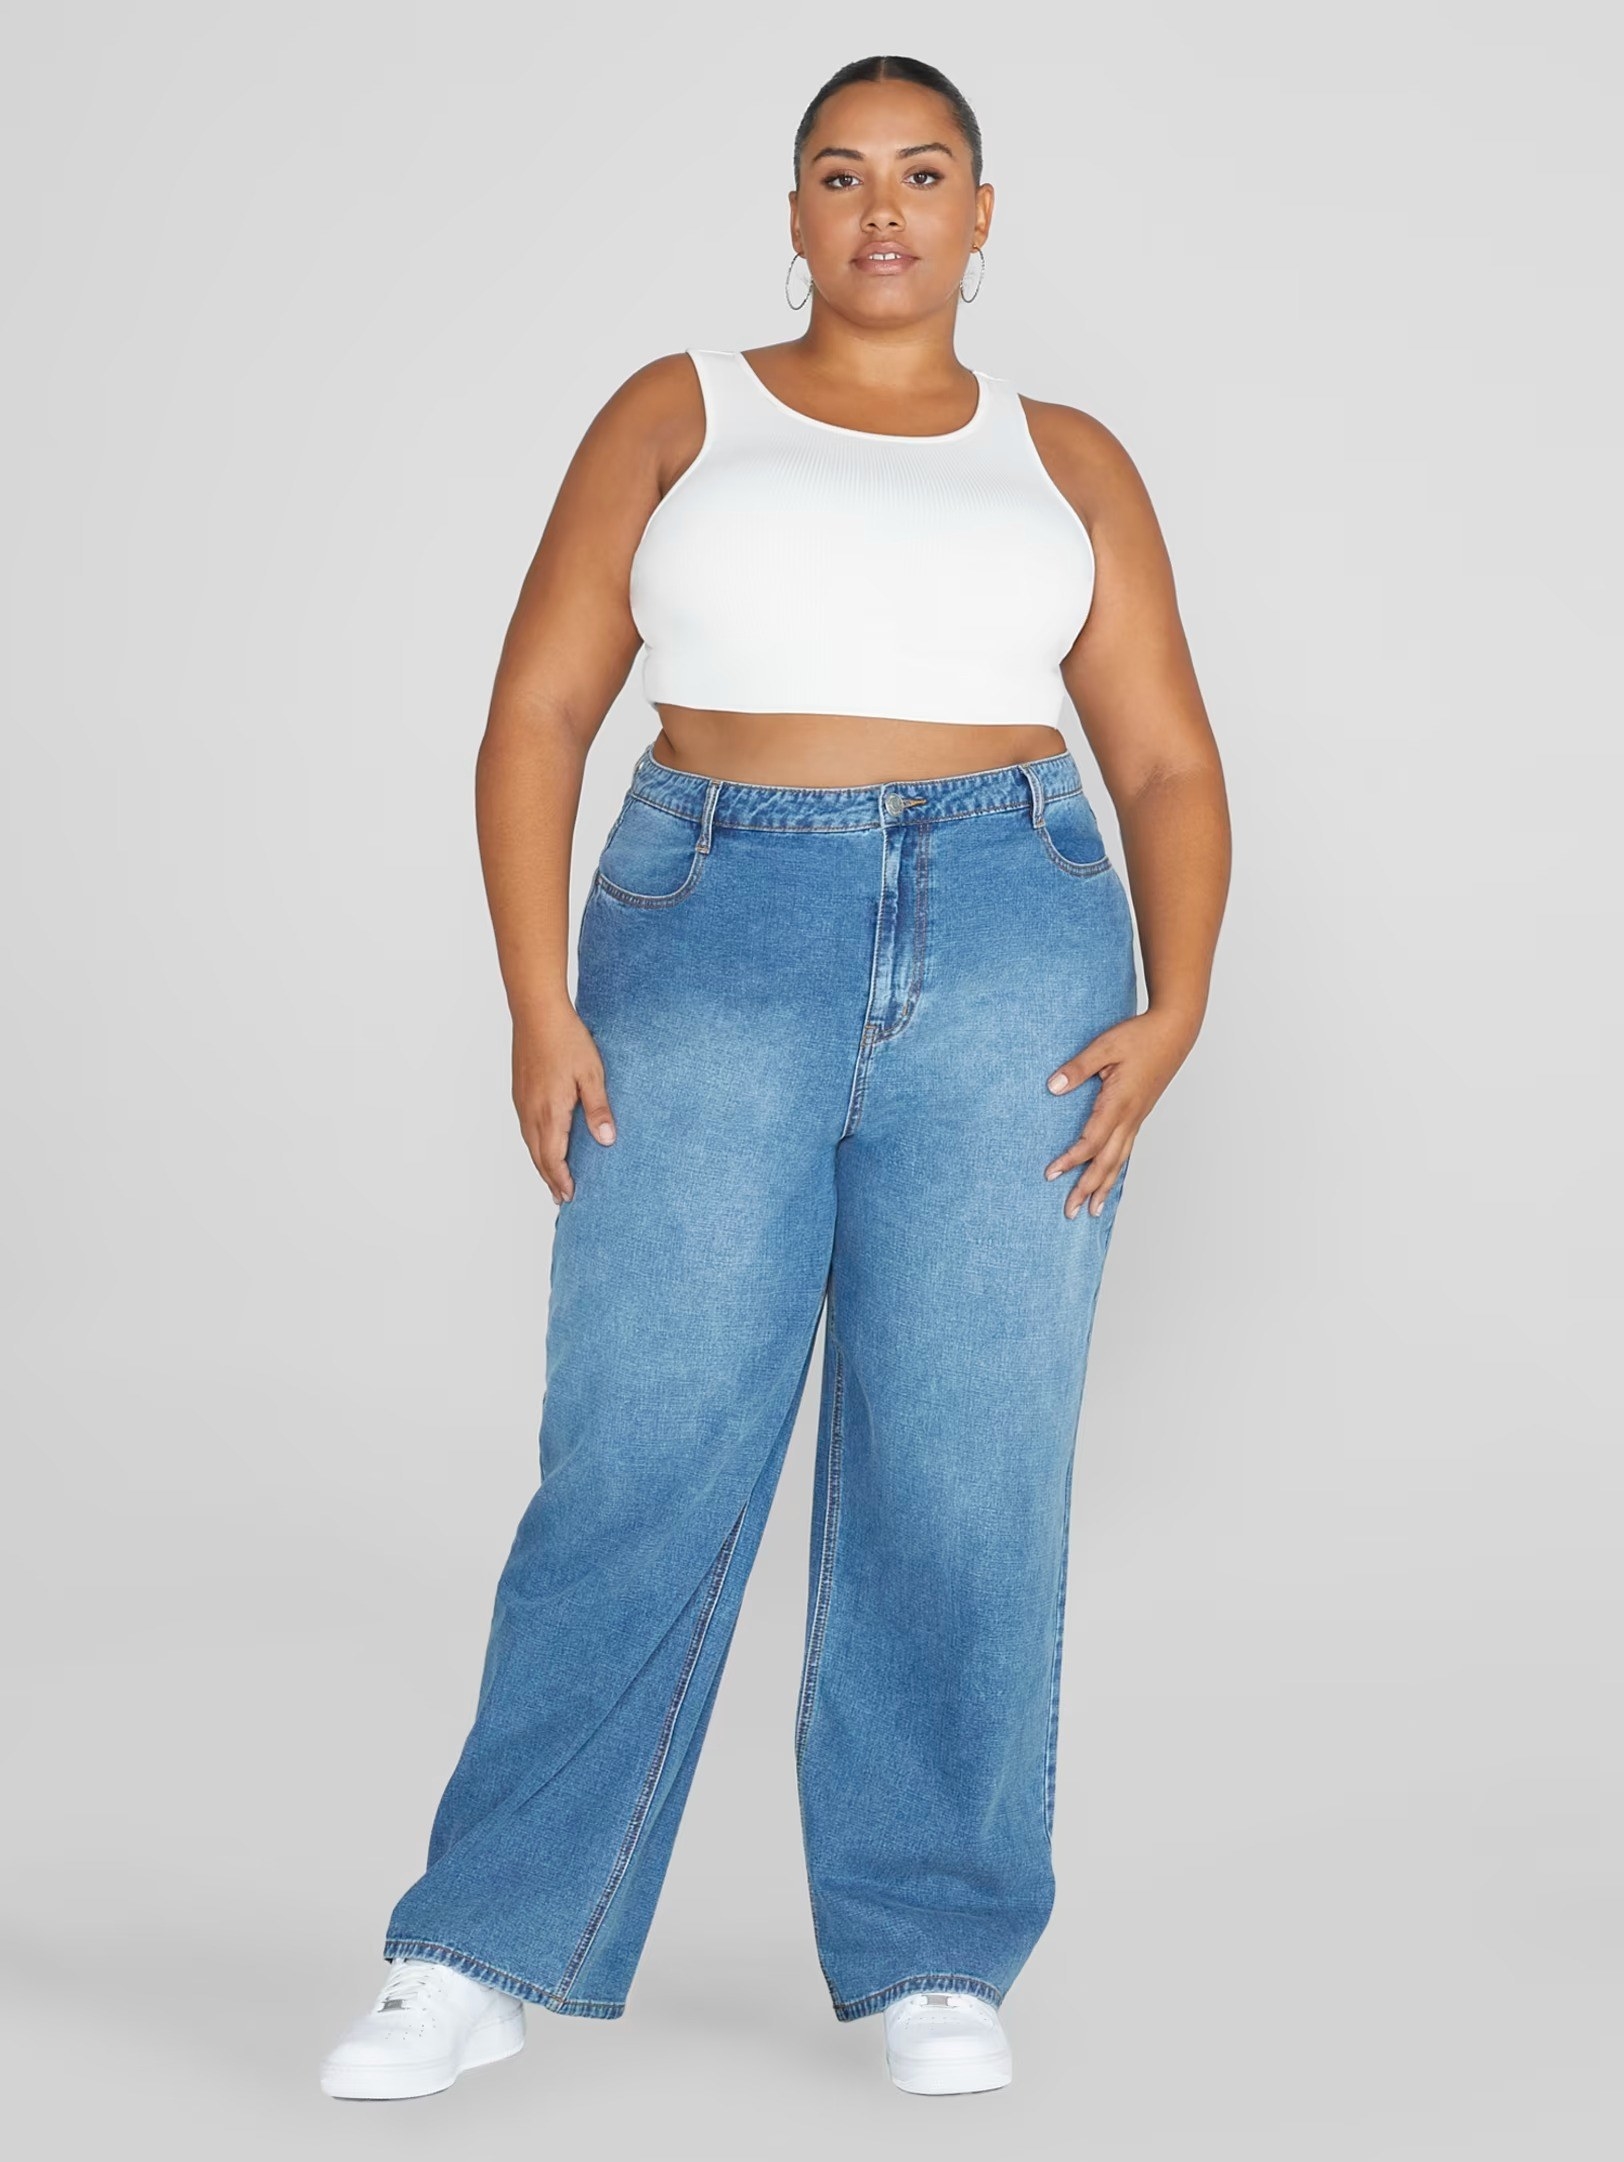 model wearing wide-leg jeans